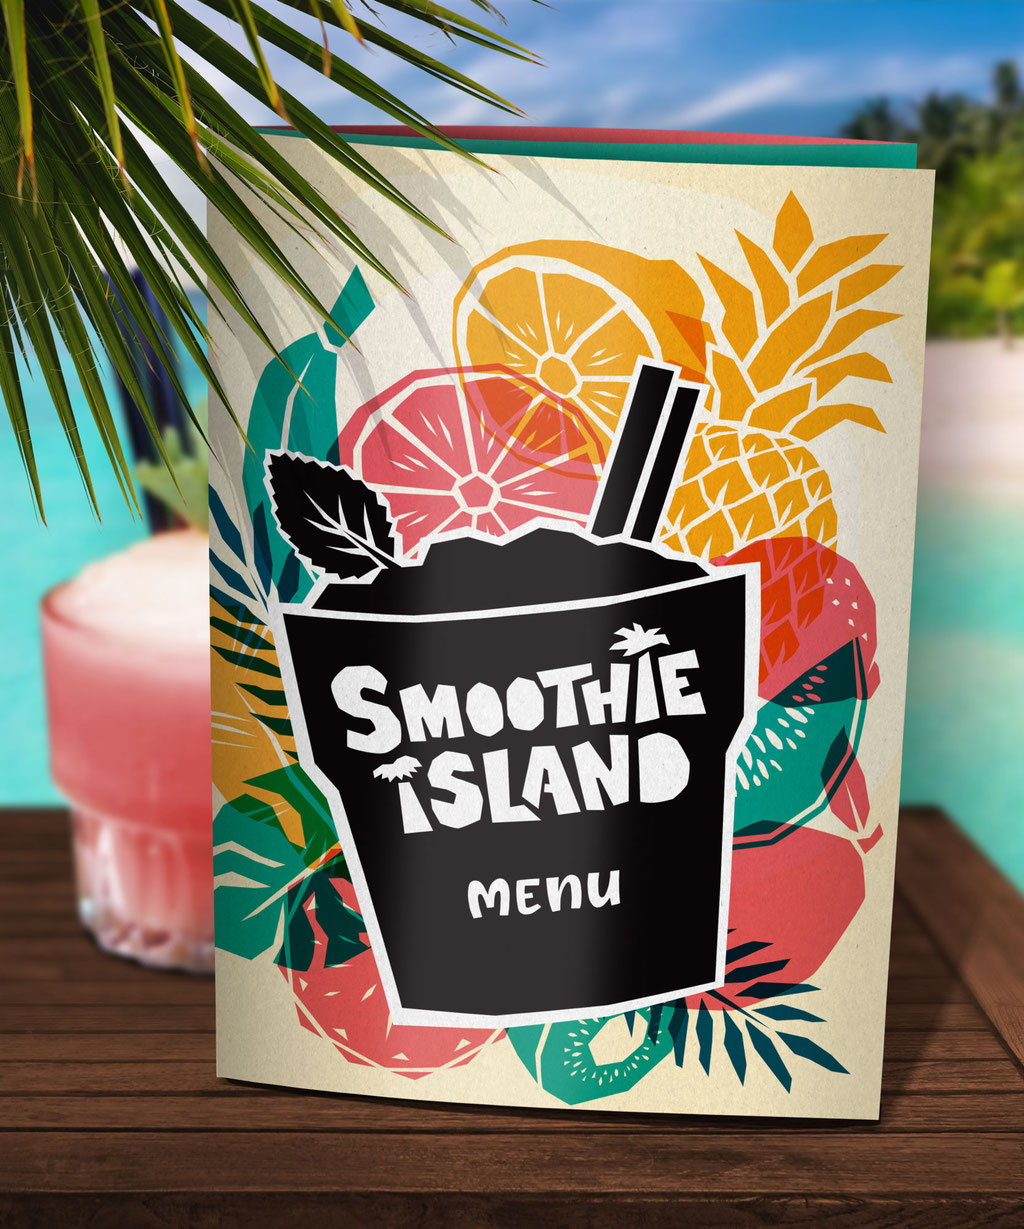 Smoothie Island cocktail menu www.juliakerschbaumer.com